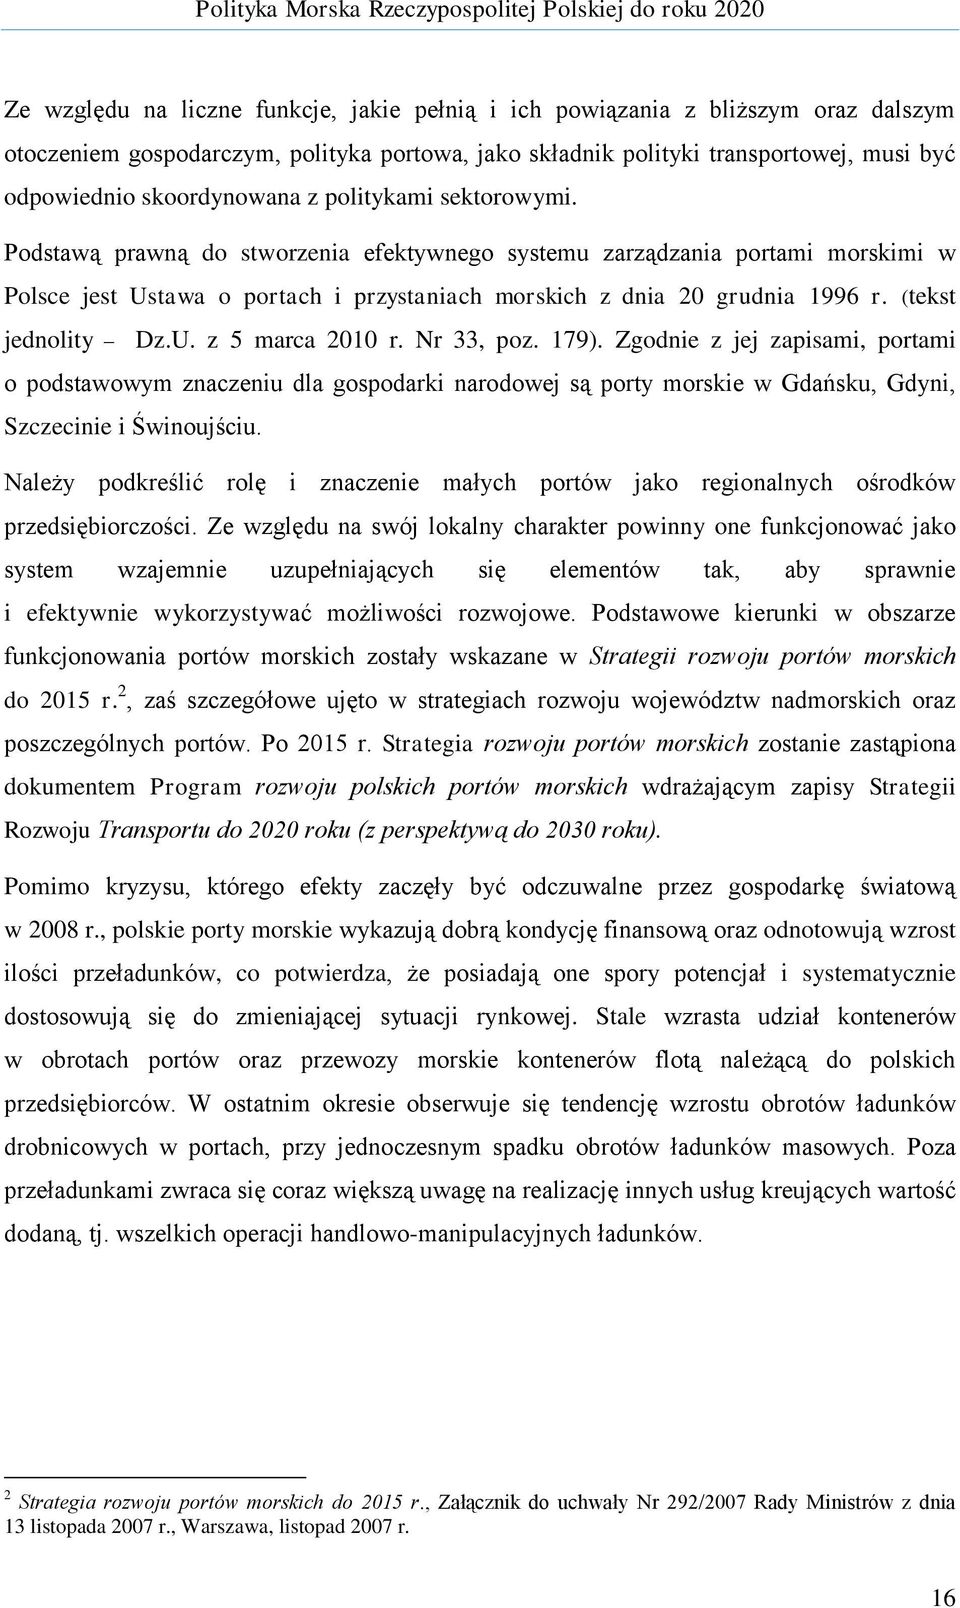 (tekst jednolity Dz.U. z 5 marca 2010 r. Nr 33, poz. 179). Zgodnie z jej zapisami, portami o podstawowym znaczeniu dla gospodarki narodowej są porty morskie w Gdańsku, Gdyni, Szczecinie i Świnoujściu.